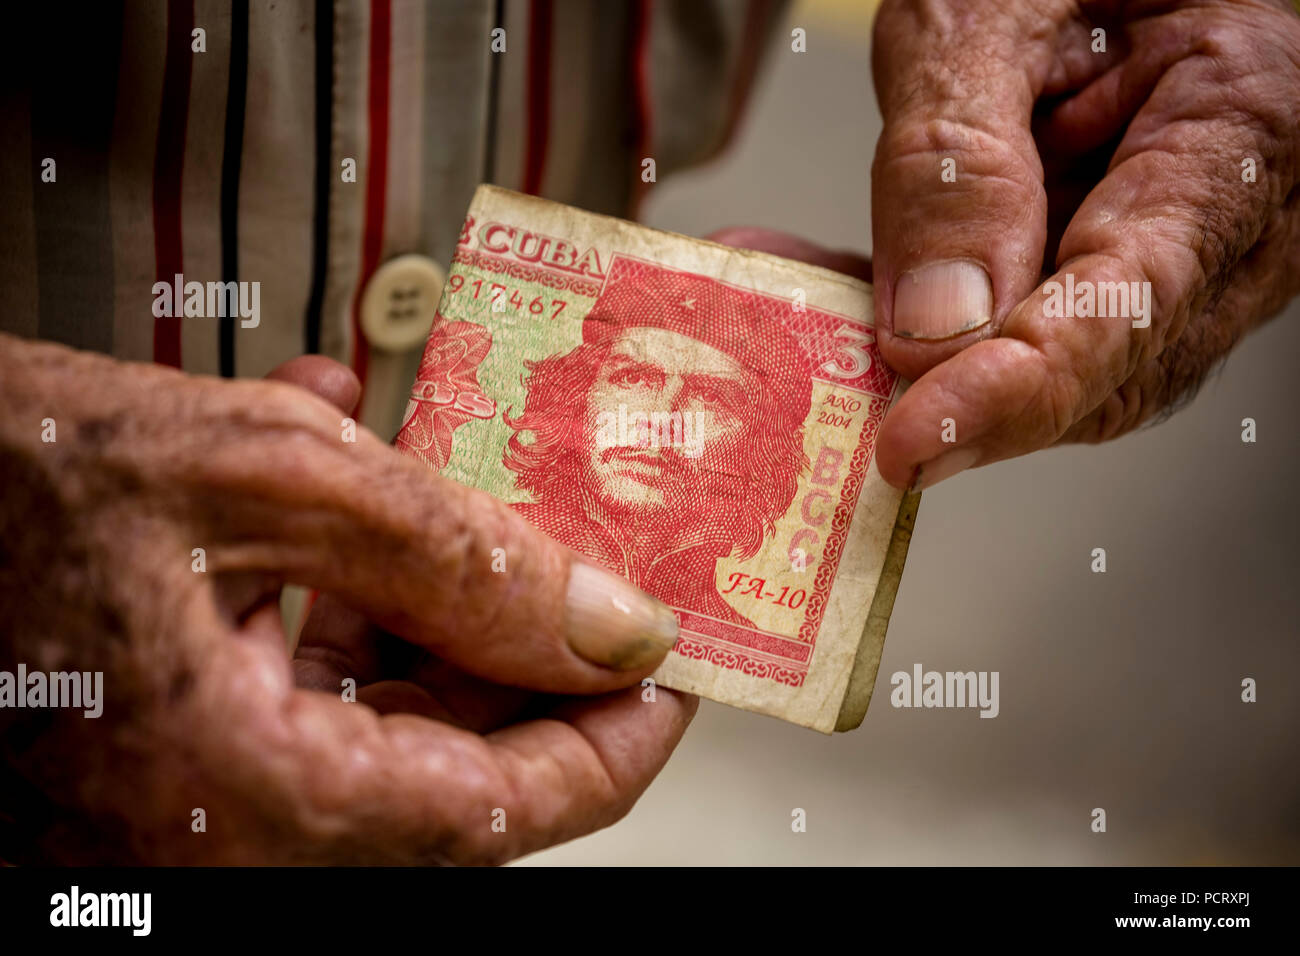 Vieux homme cubain détient un billet de 3 peso avec le portrait d'Ernesto Che Guevara dans la main, la monnaie locale, tasse, peso cubain, la pauvreté, La Habana, La Havane, La Havane, Cuba, Cuba Banque D'Images